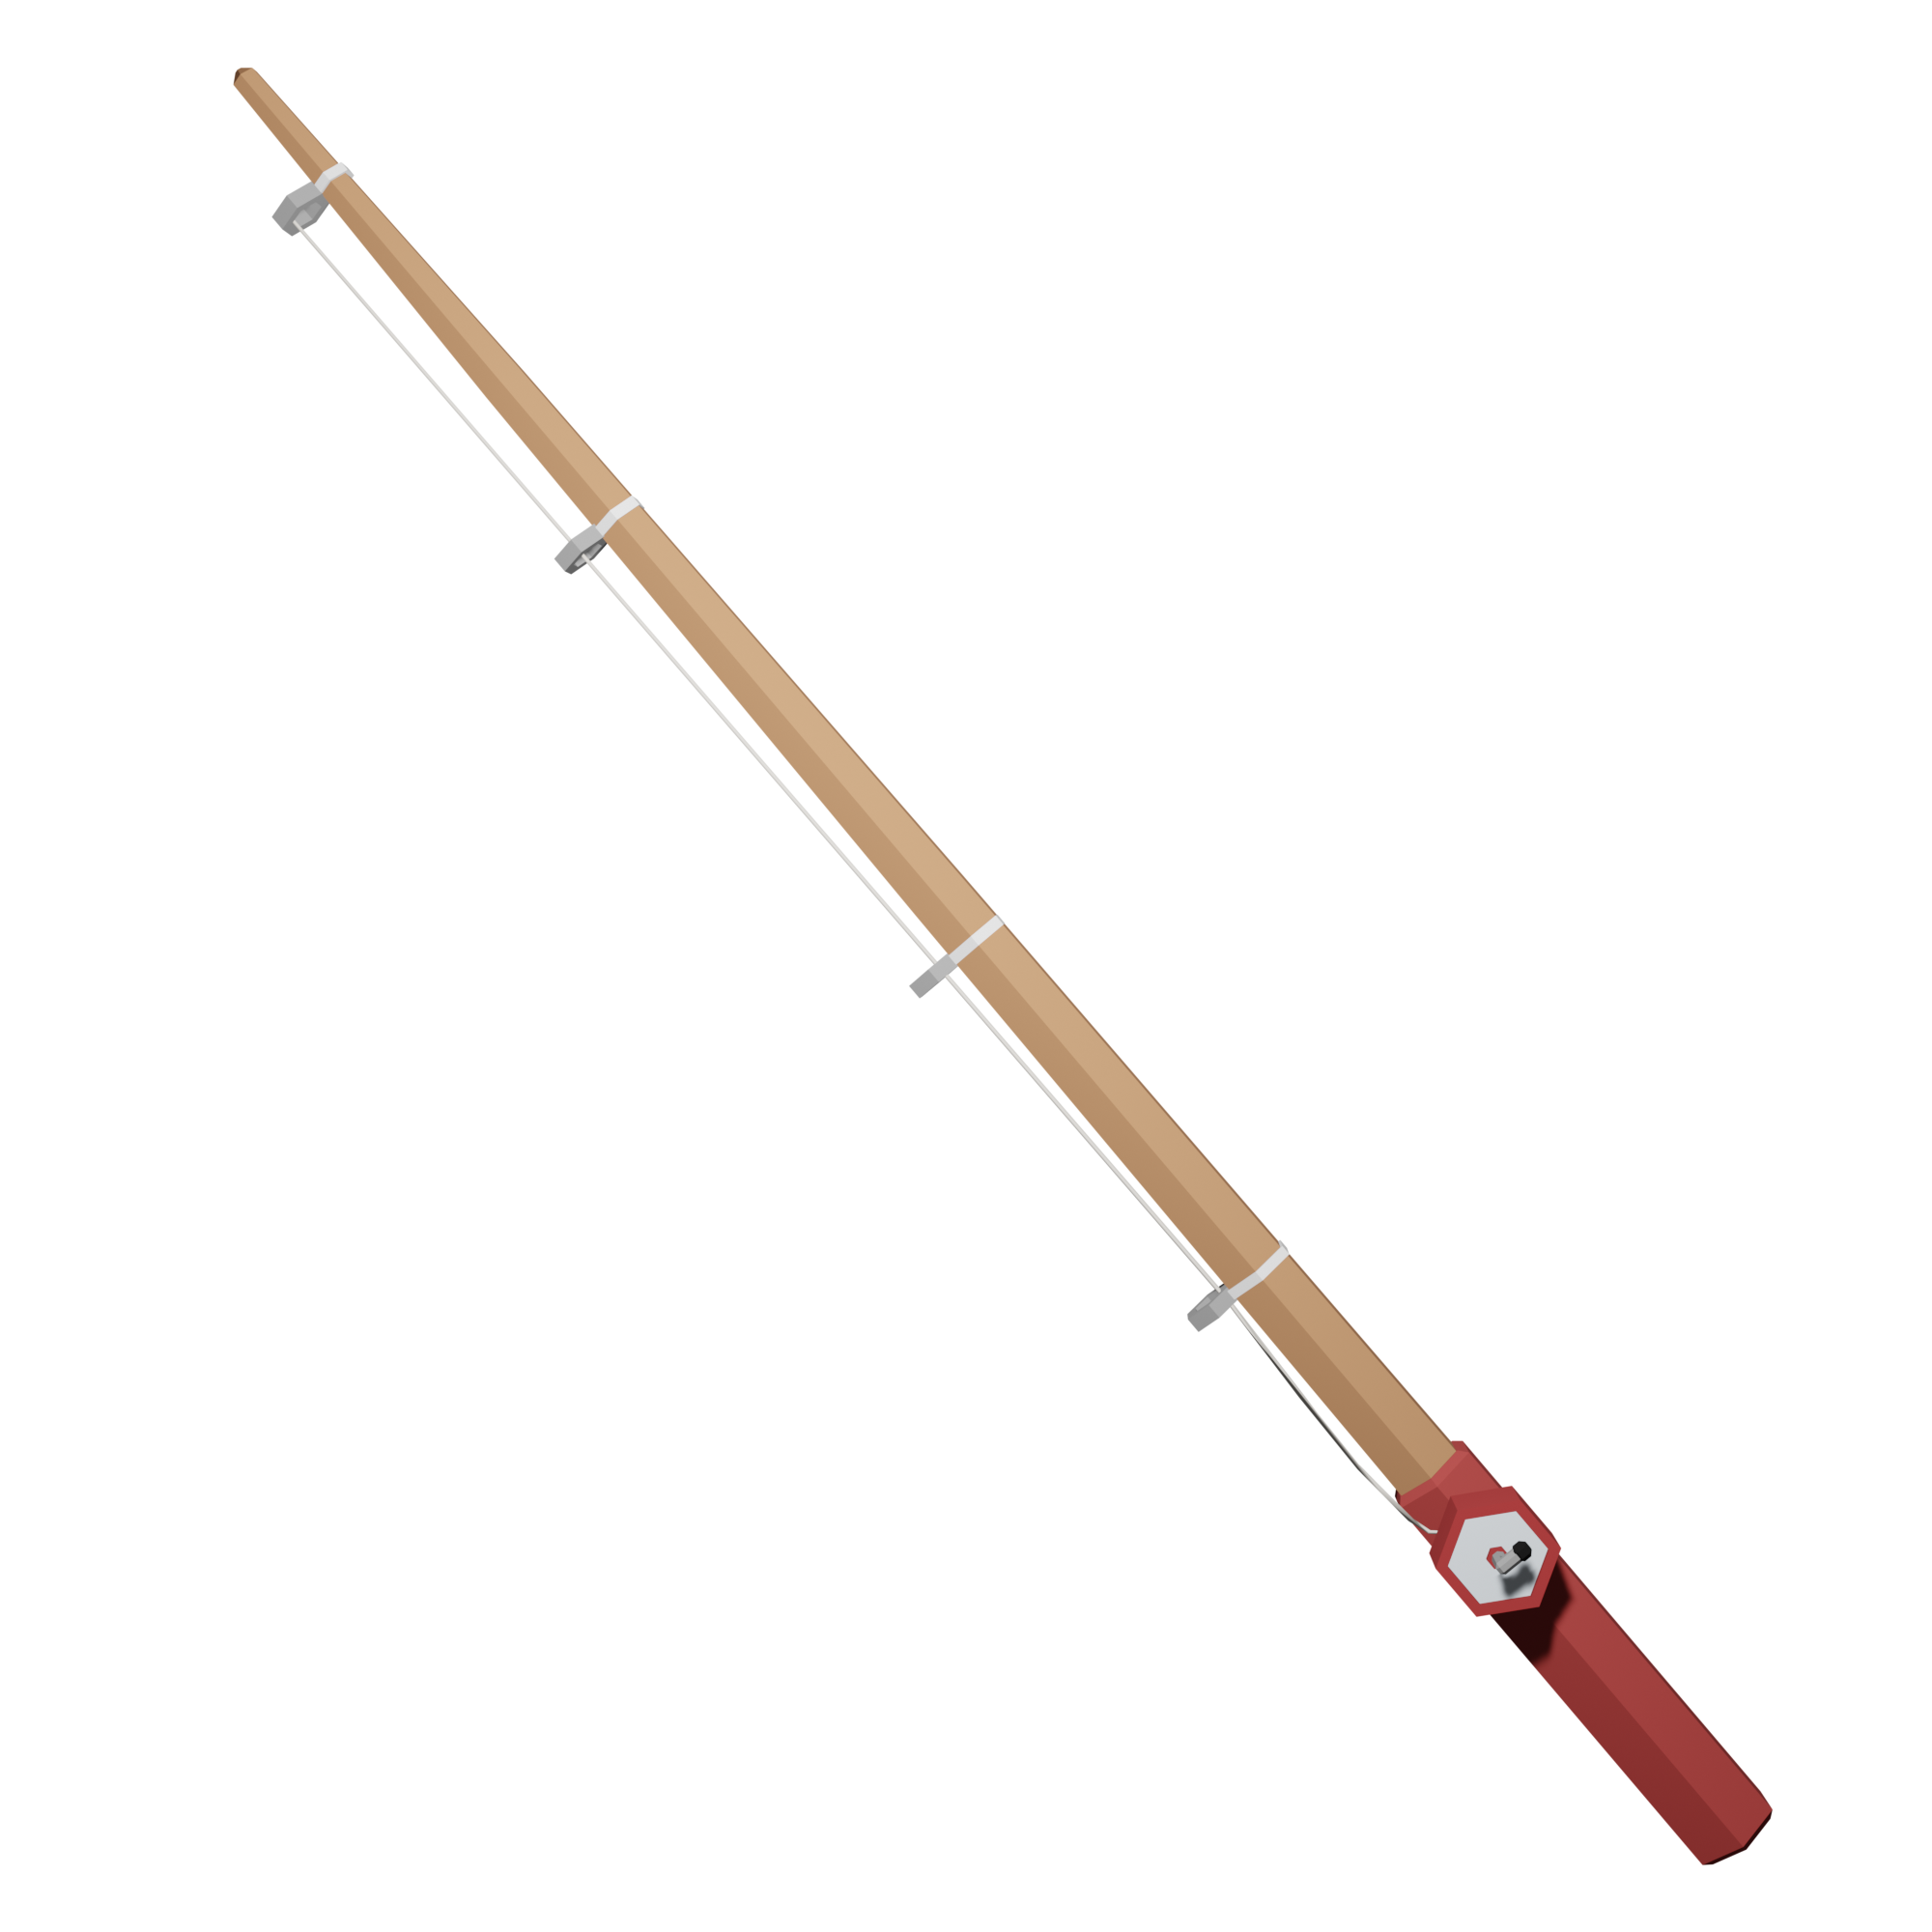 Wooden Fishing Rod, Islands Wiki